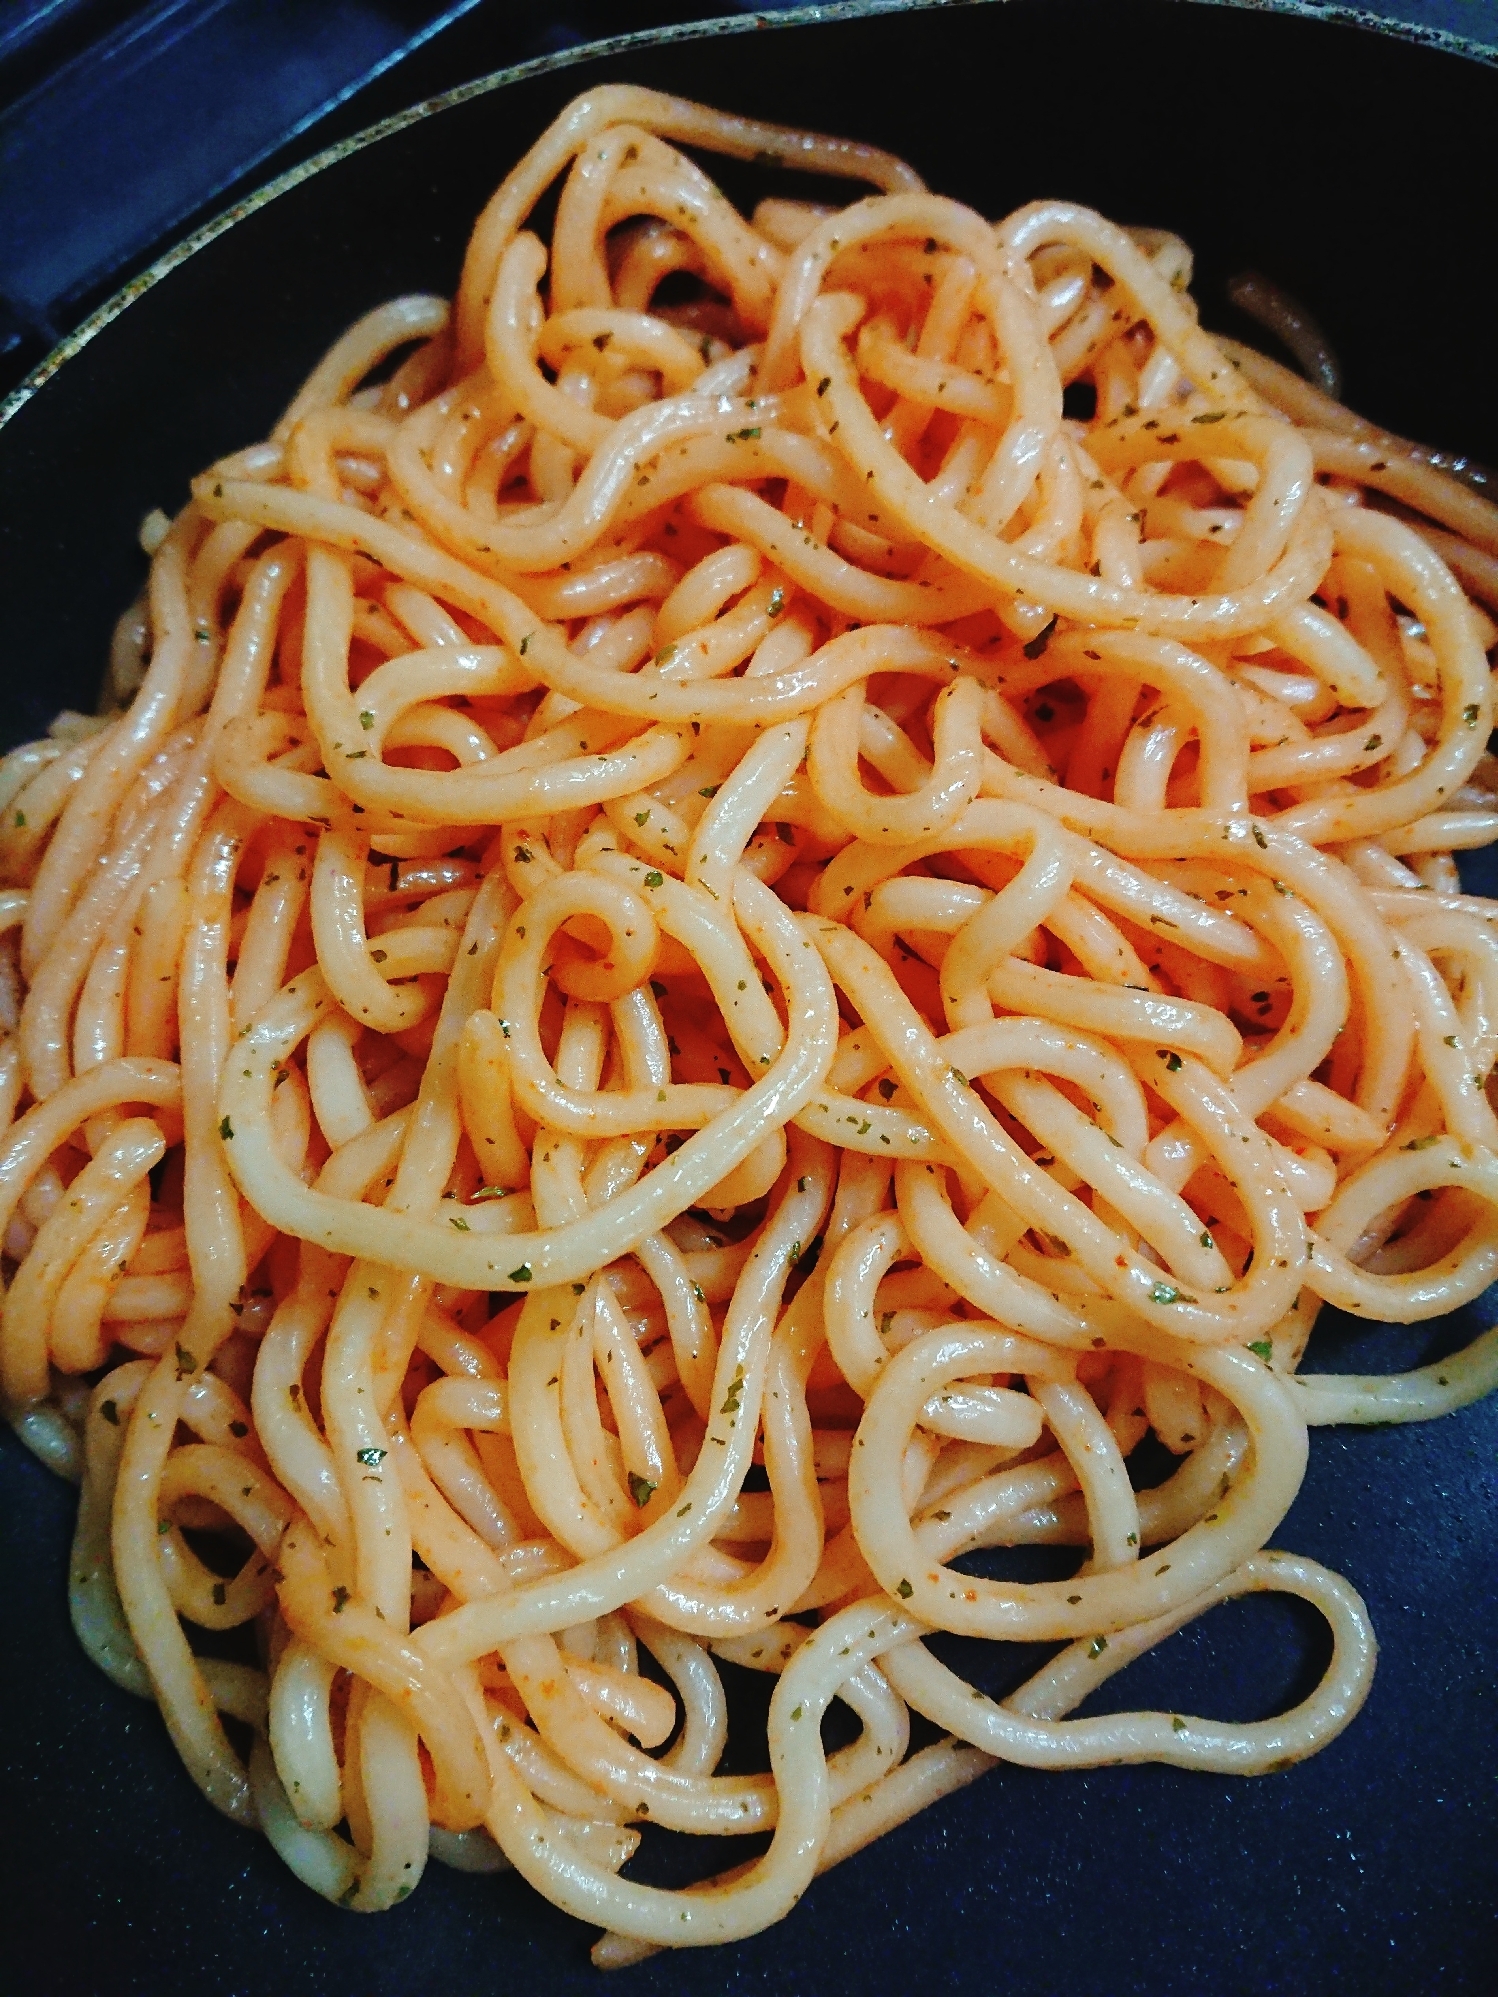 ゆでスパゲティをアレンジ